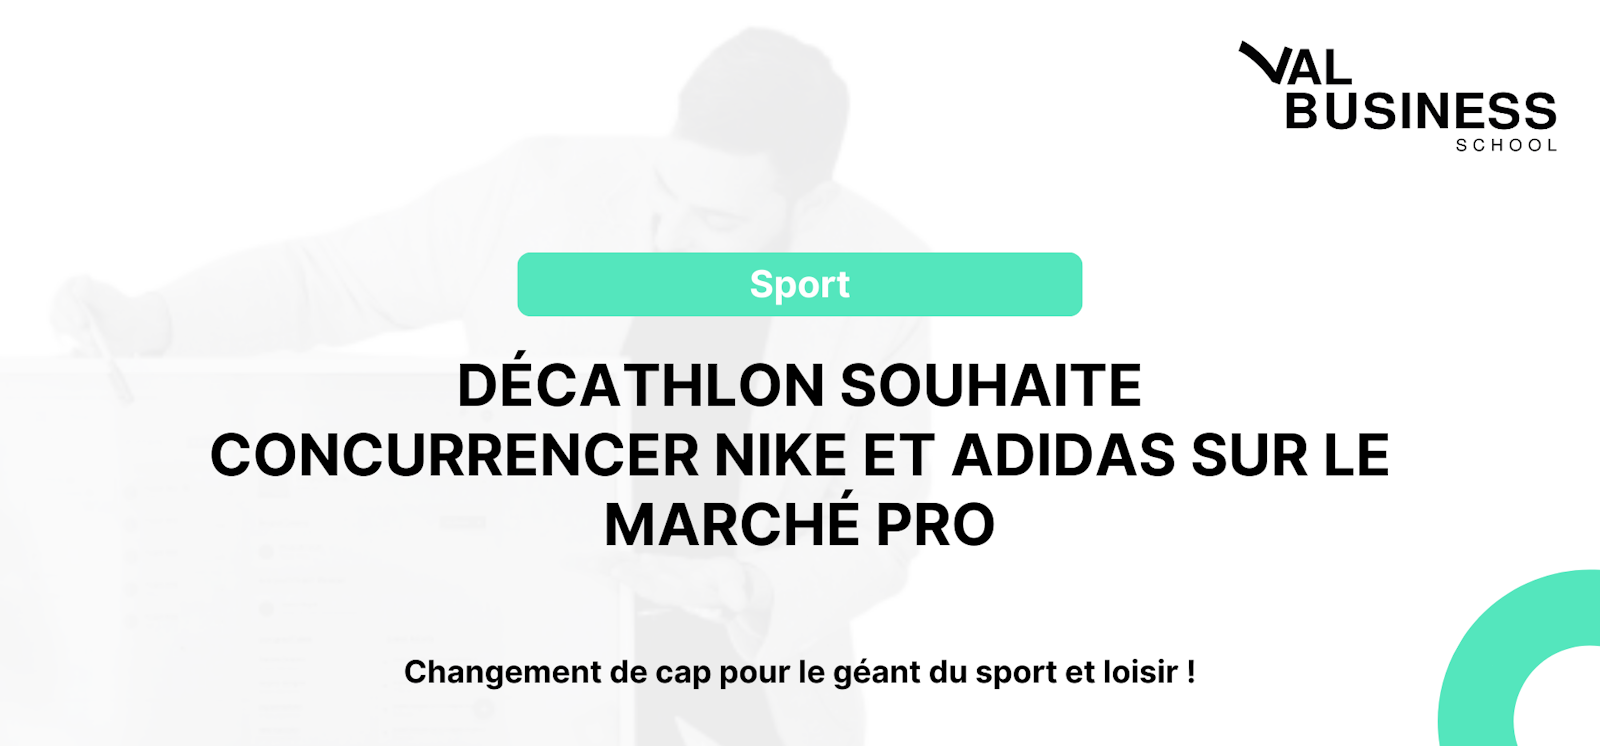 Decathlon : Un pari ambitieux pour concurrencer les géants Nike et Adidas